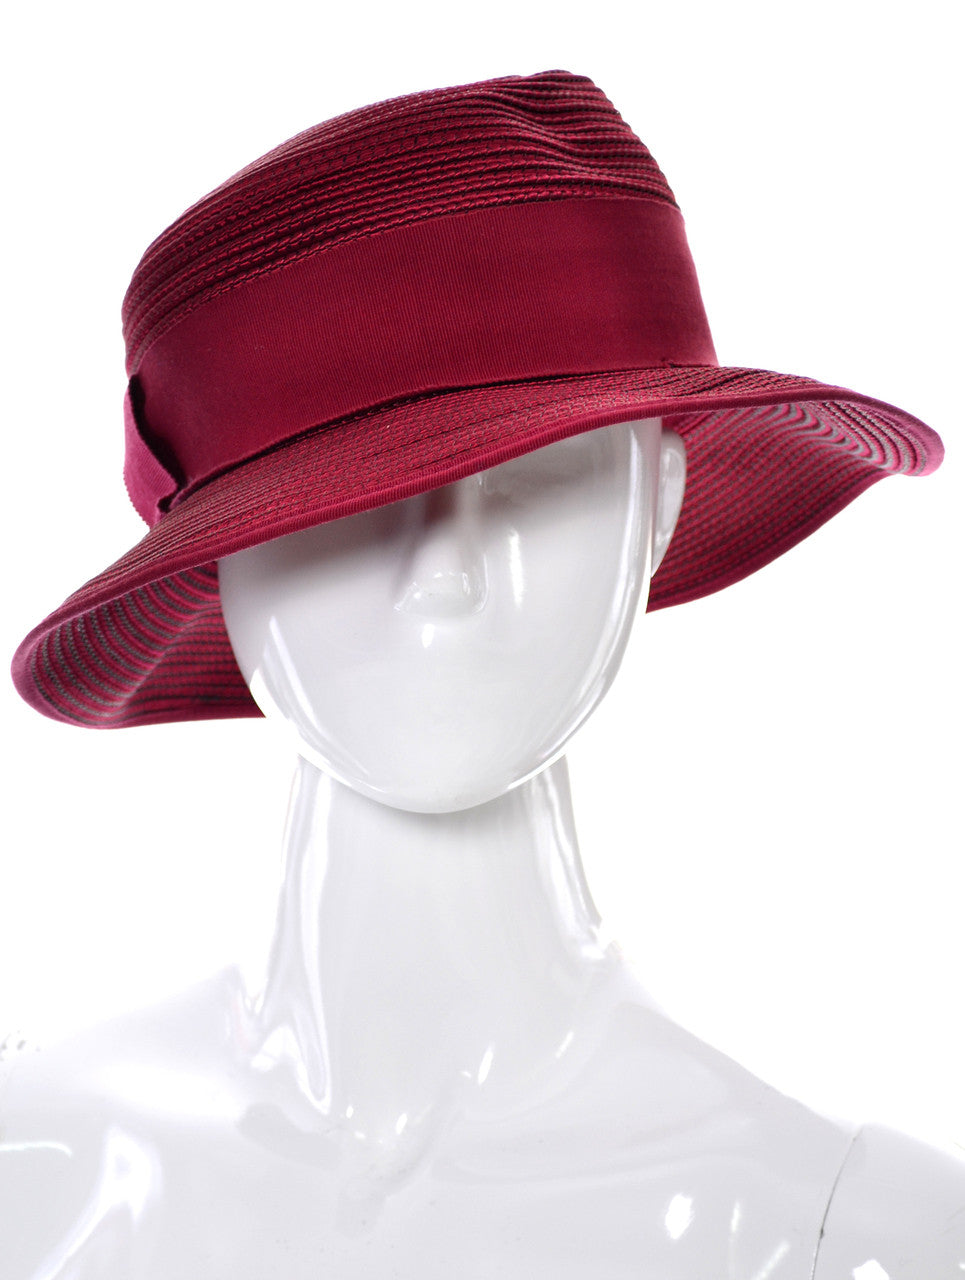 Jacques Le Corre Paris designer vintage hat size large